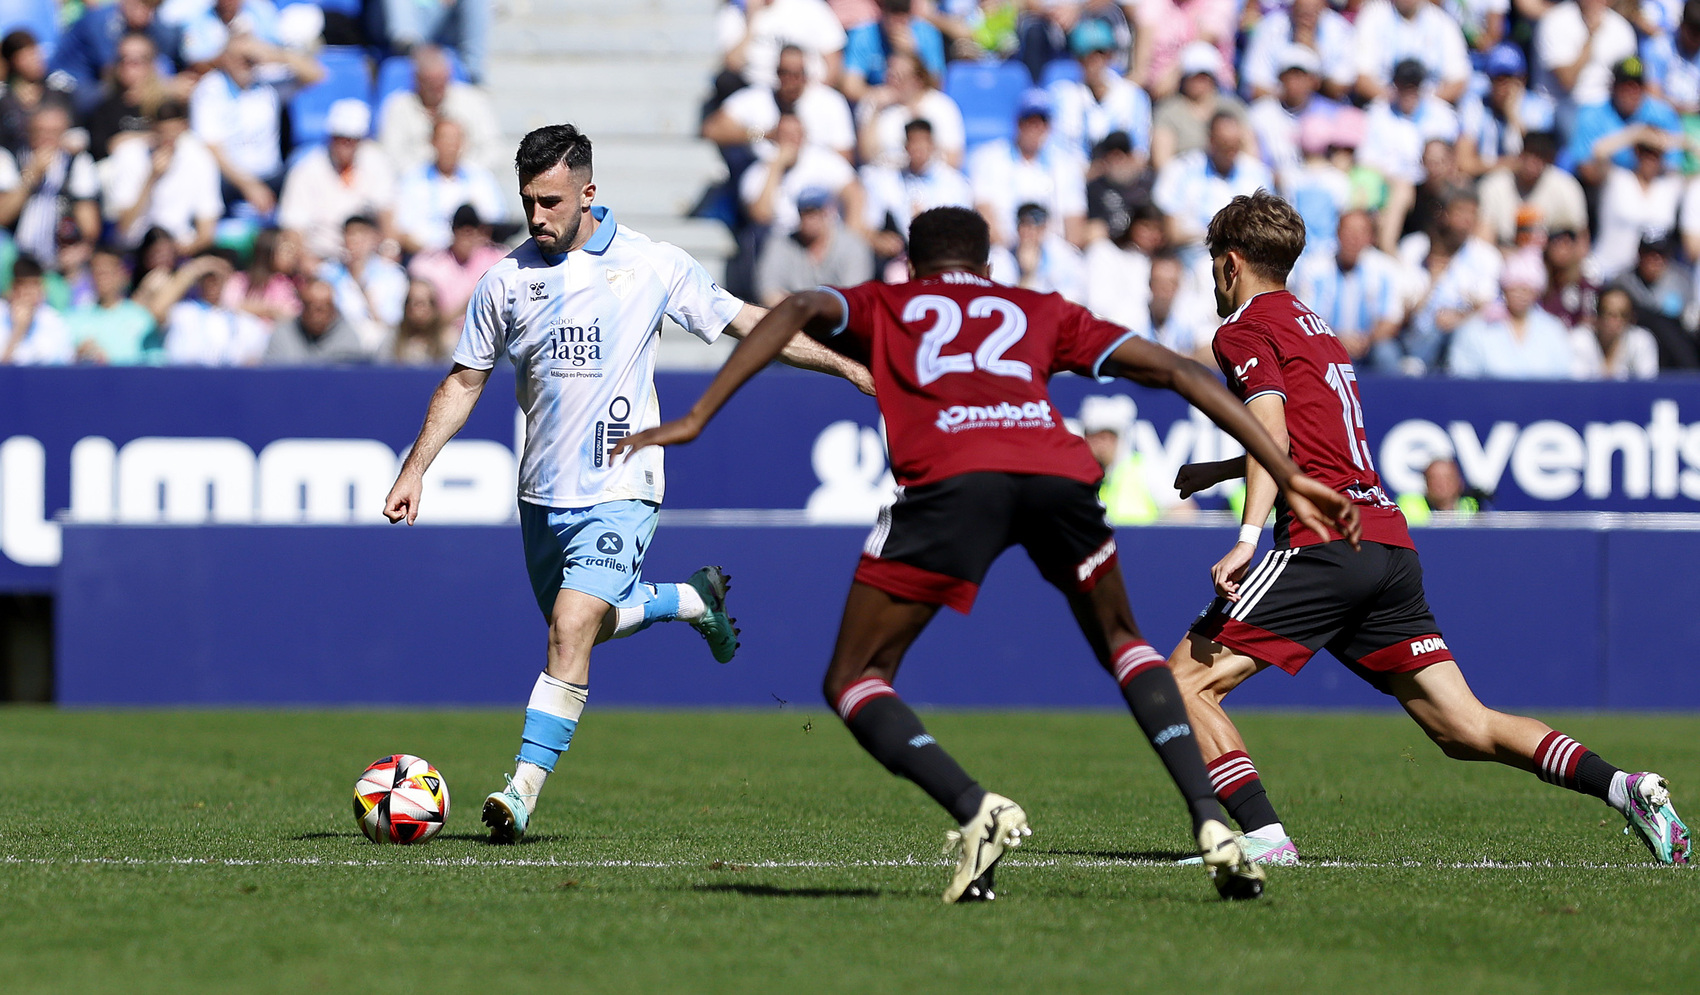 Carlos Puga: “Es muy fácil jugar aquí con la afición apoyándote” | Málaga CF | Web Oficial